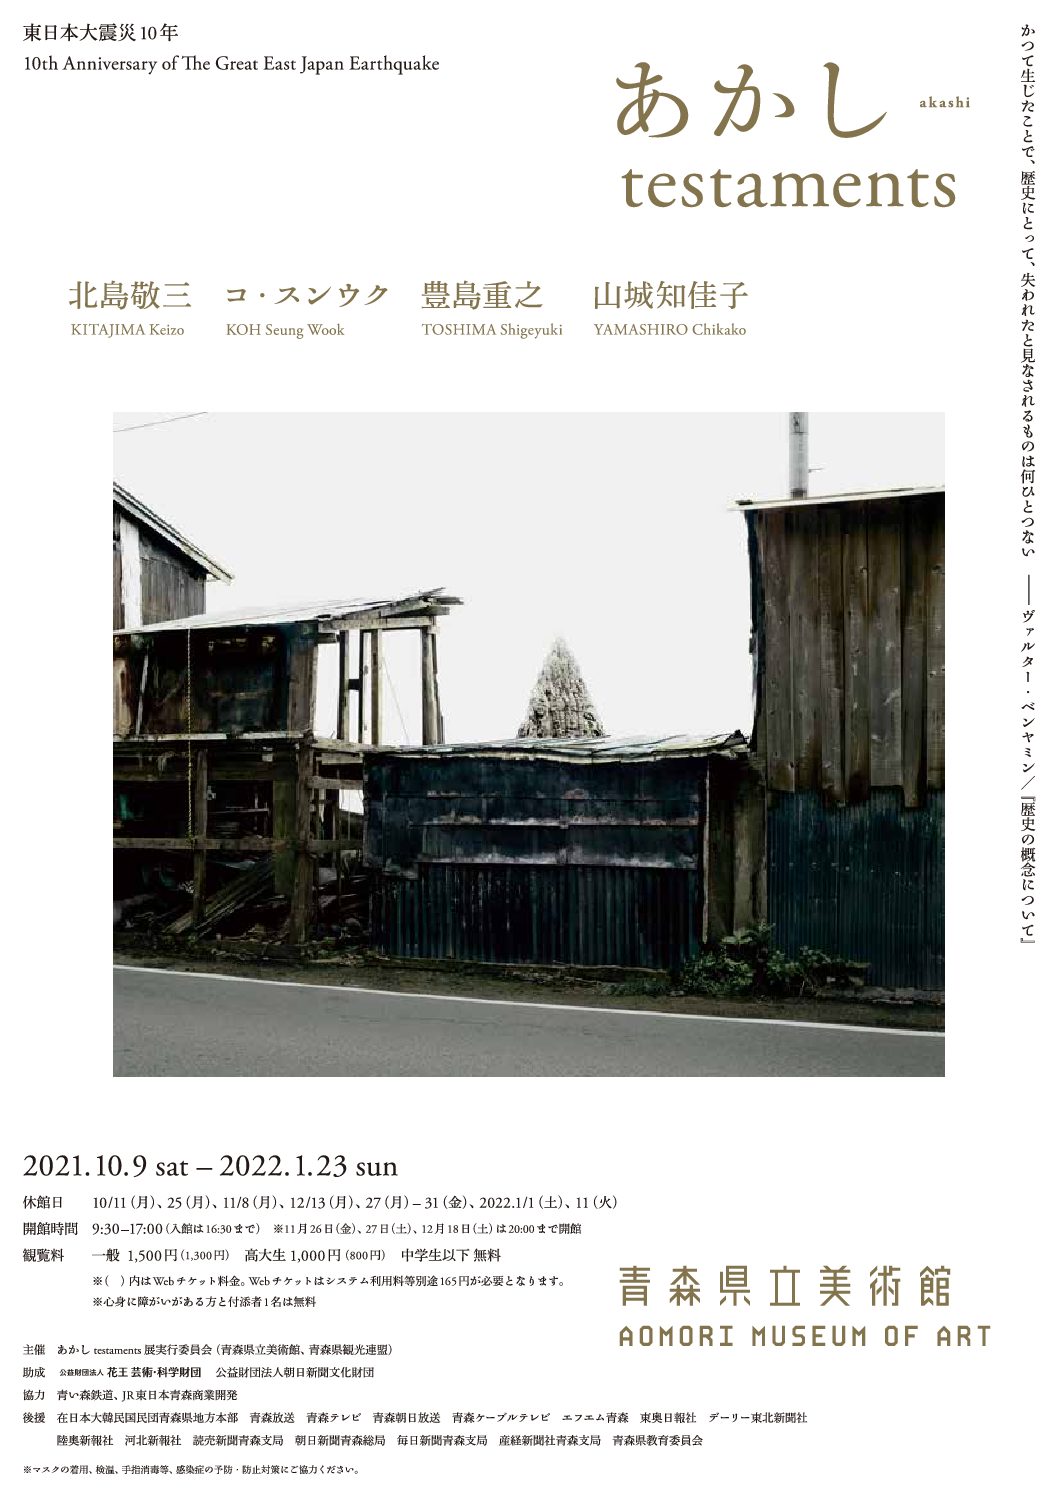 青森県立美術館にて「東日本大震災10年　あかし testaments」が開催されます